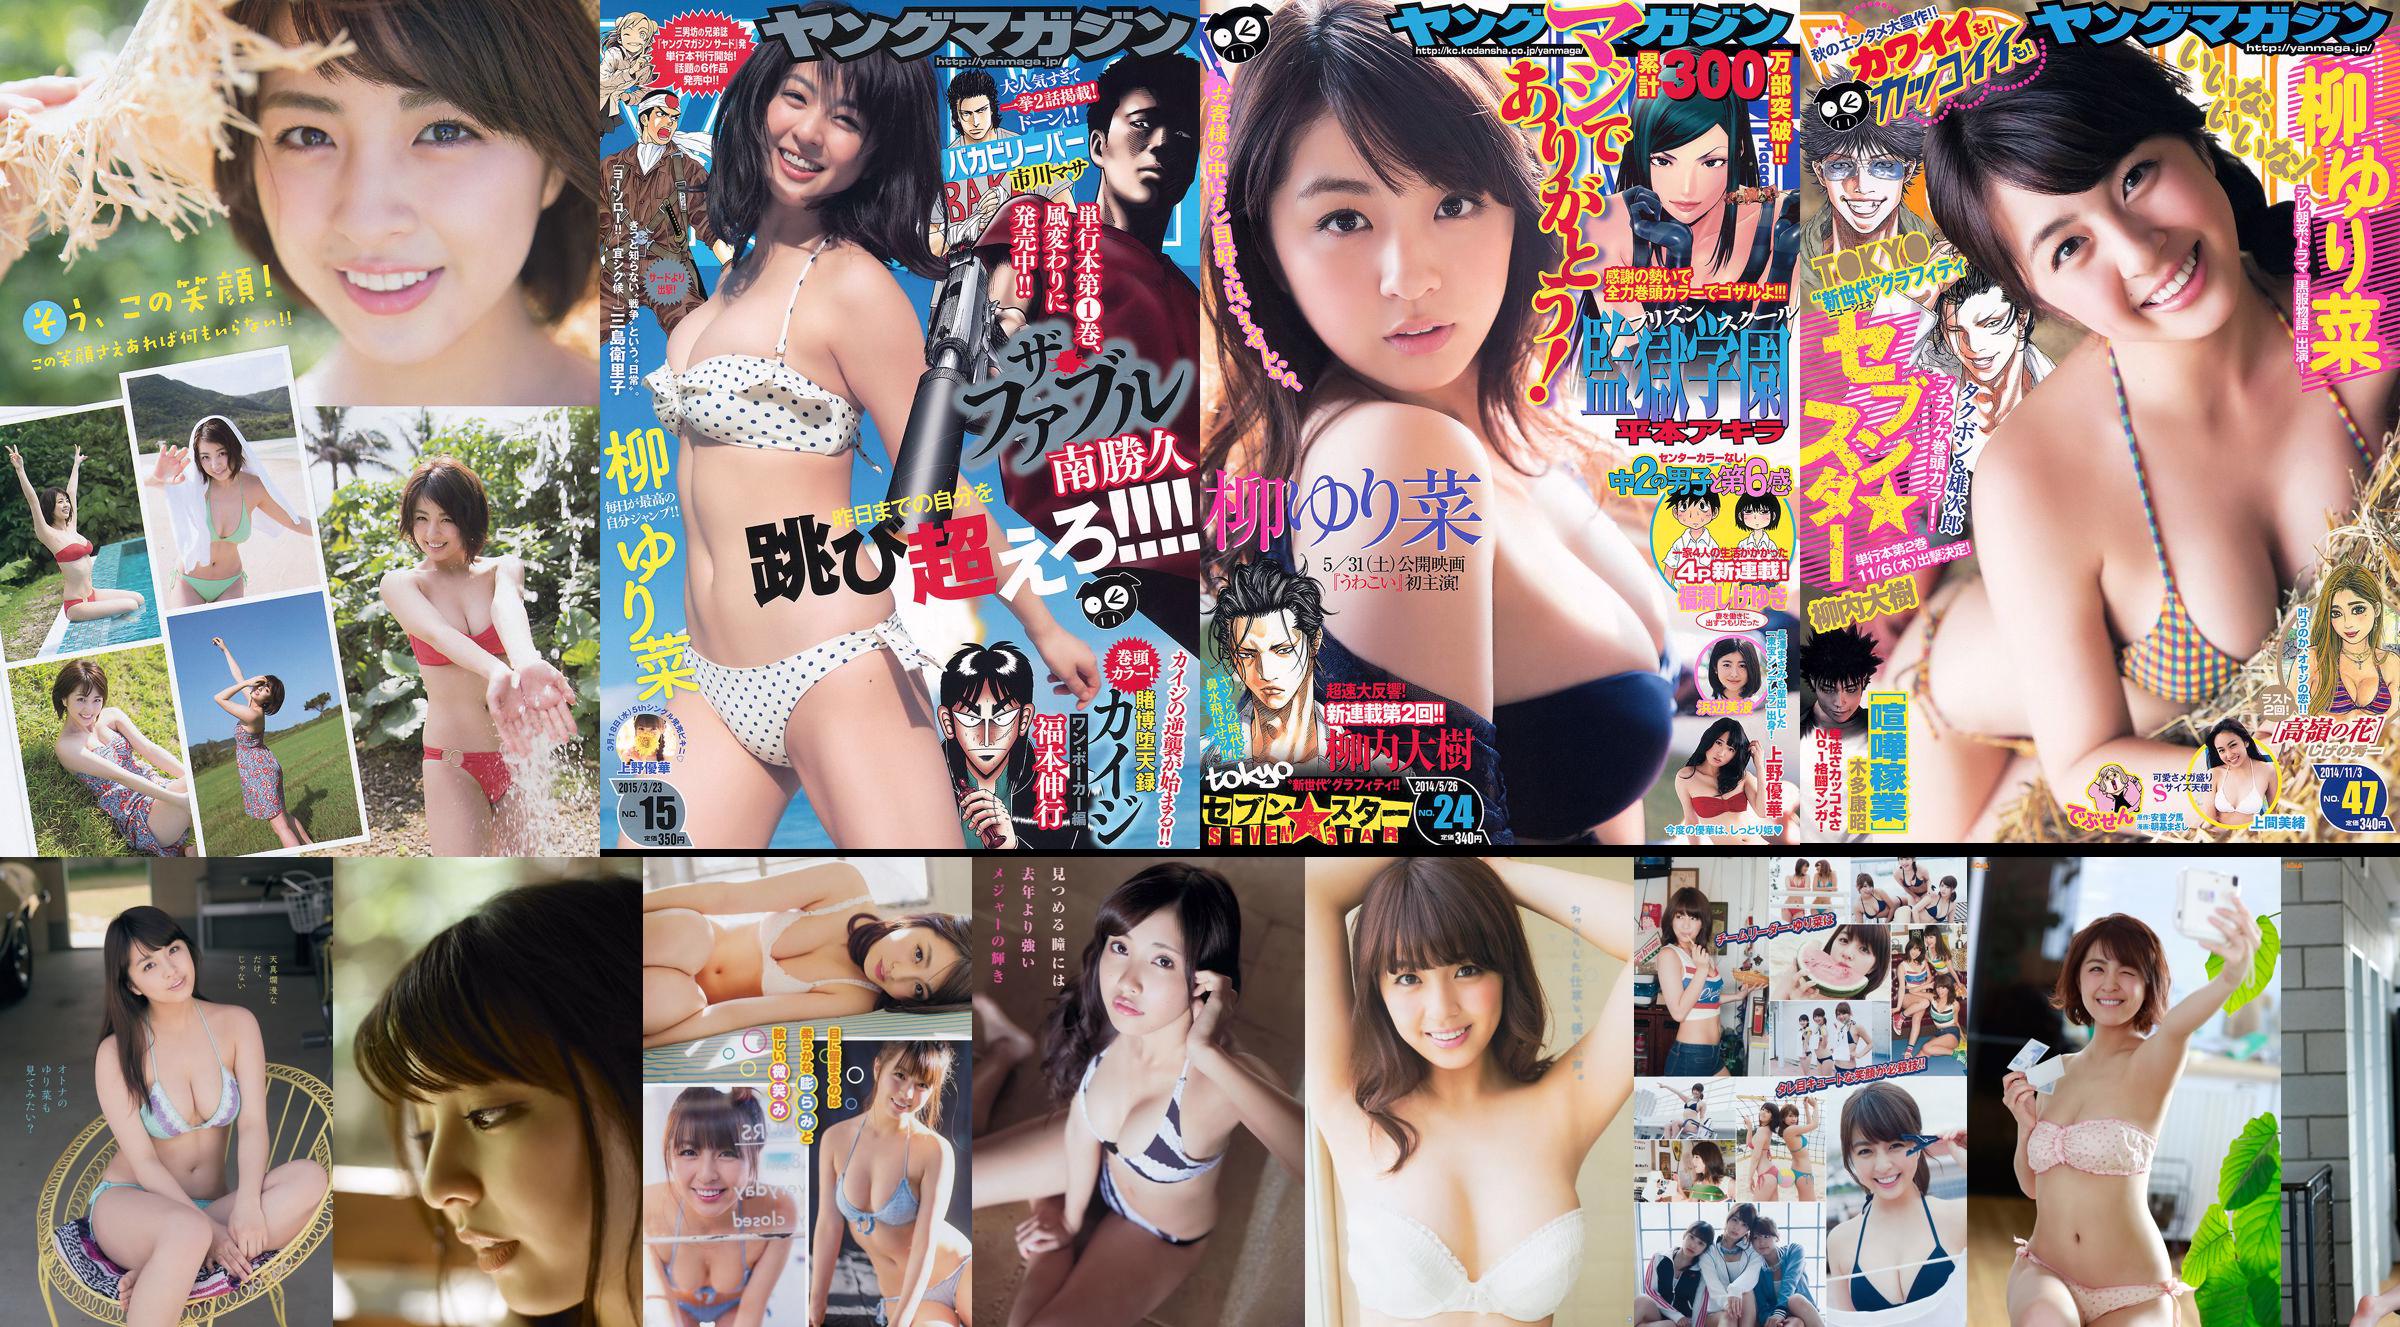 [Tạp chí trẻ] Rina Yanagi Mio Uema 2014 Tạp chí ảnh số 47 No.273bc5 Trang 4